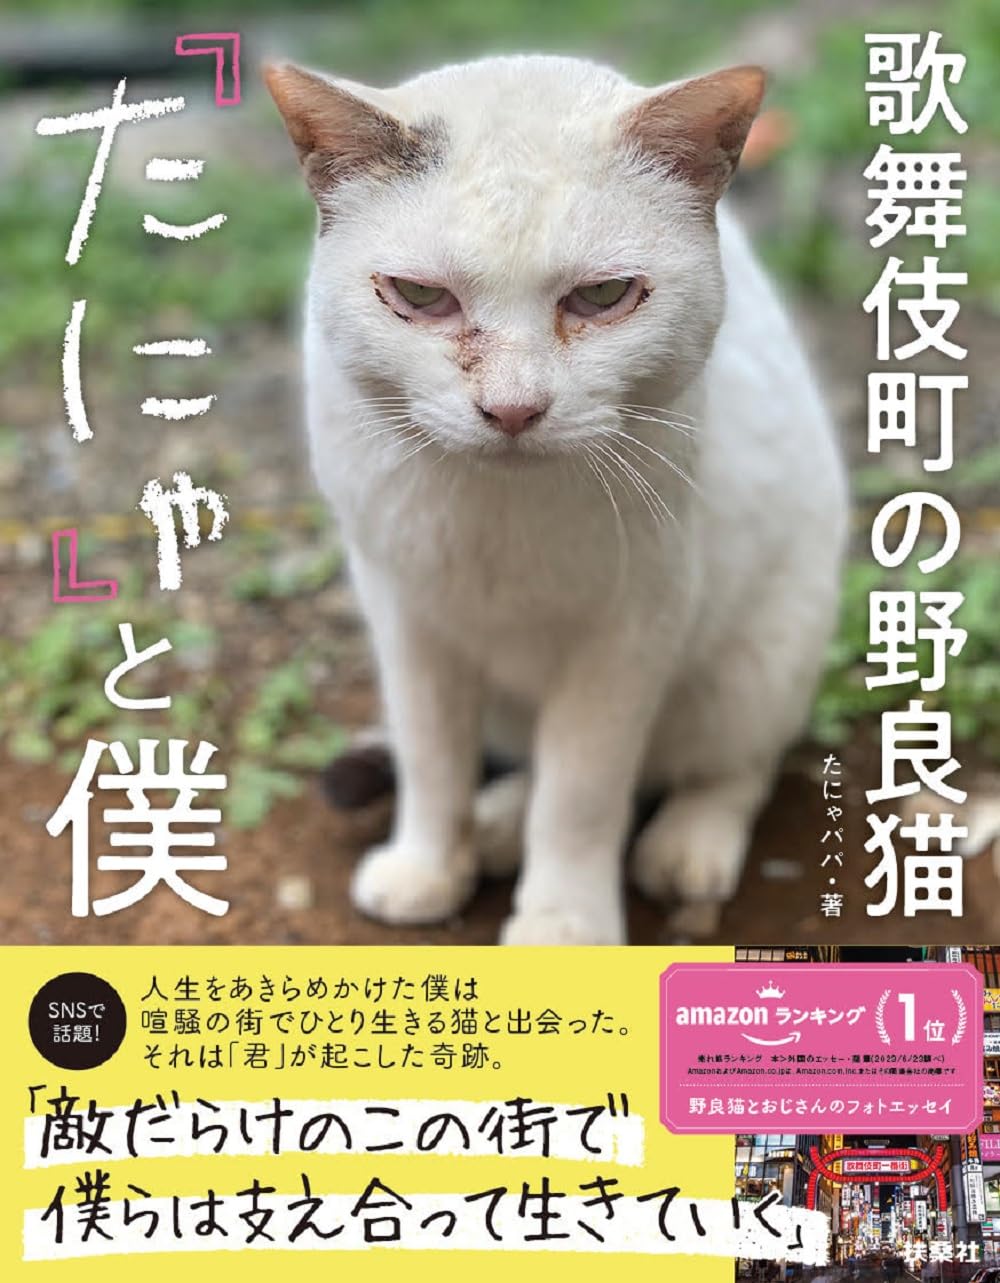 歌舞伎町に生きる野良猫とおじさんの泣けるフォトエッセイ『歌舞伎町の野良猫「たにゃ」と僕』